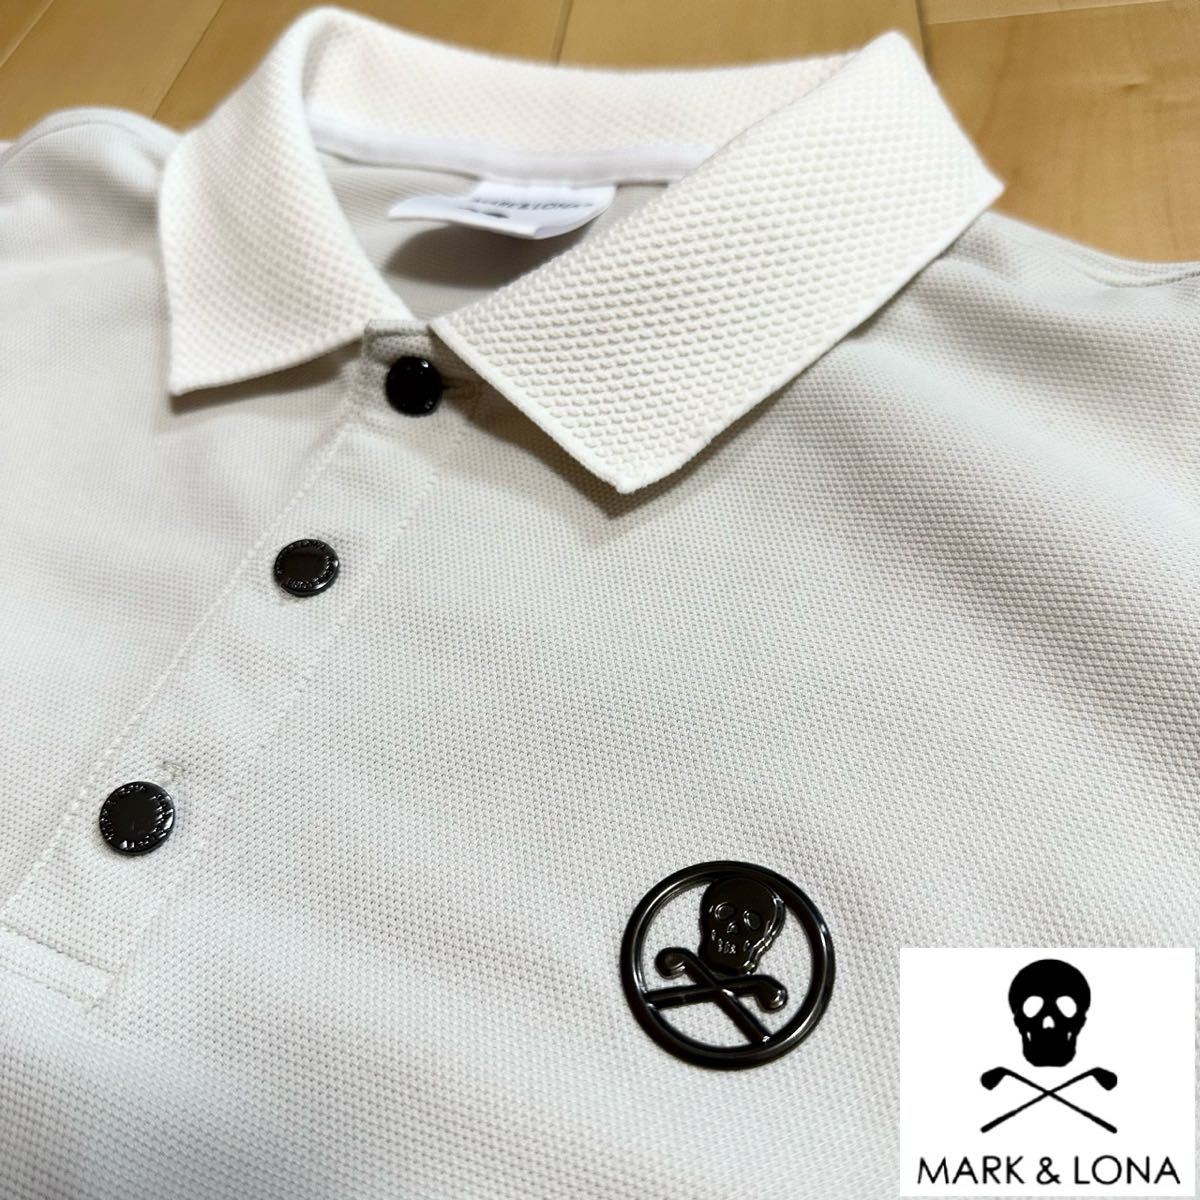 マークアンドロナ48( L)★ポロシャツ サイズL ドライ ストレッチ 高級ゴルフブランド 美品